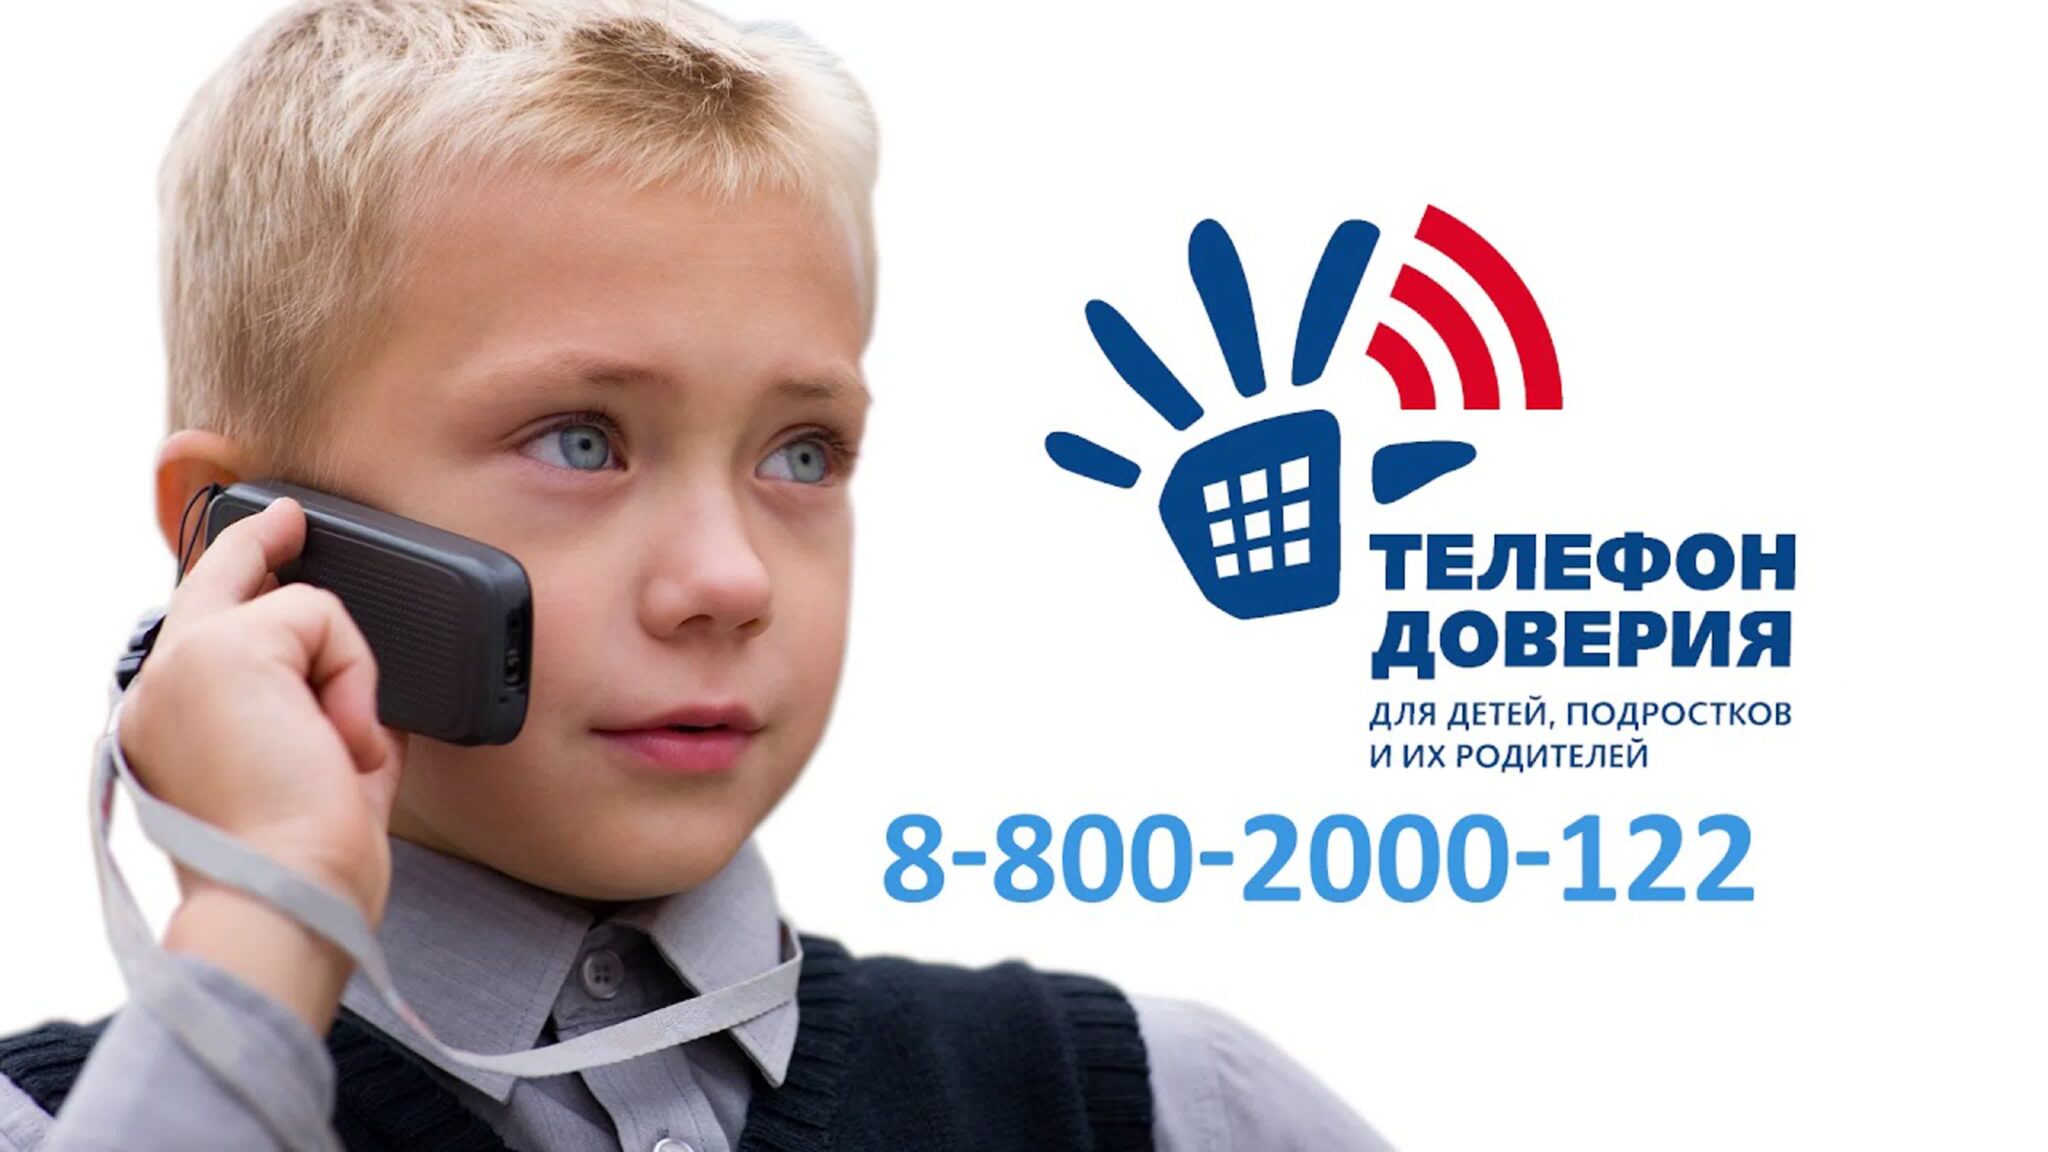 В Тульской области работает детский телефон доверия, запомни его.